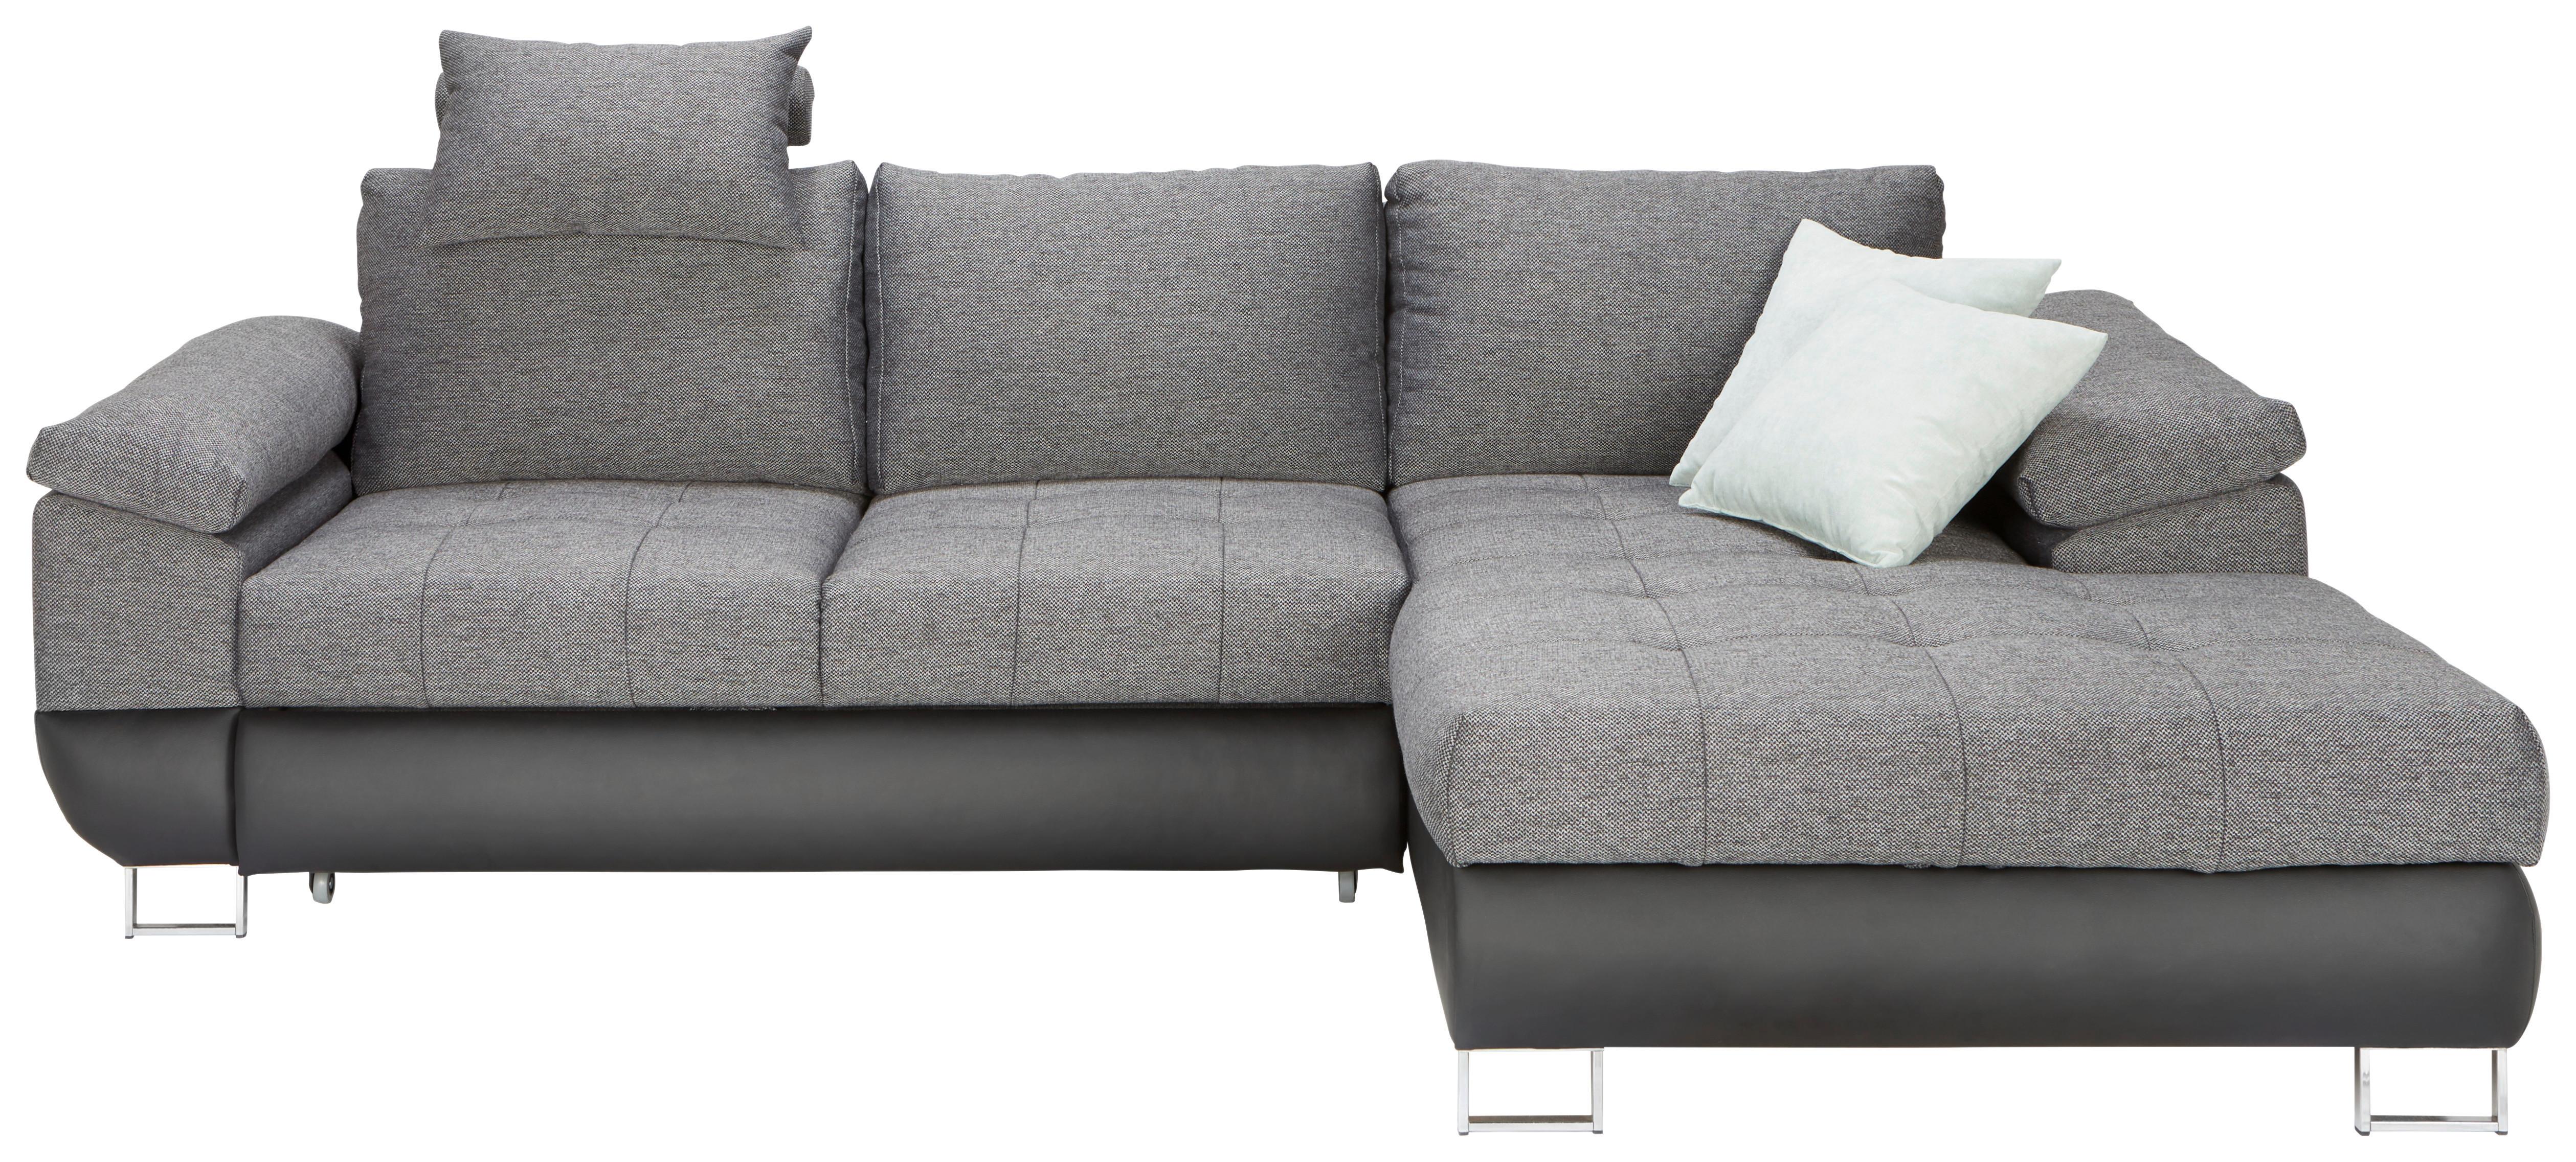 Sedežna Garnitura Focus, Z Ležiščem - barve kroma/temno siva, Konvencionalno, umetna masa/tekstil (268/91/170cm) - Top ponudba